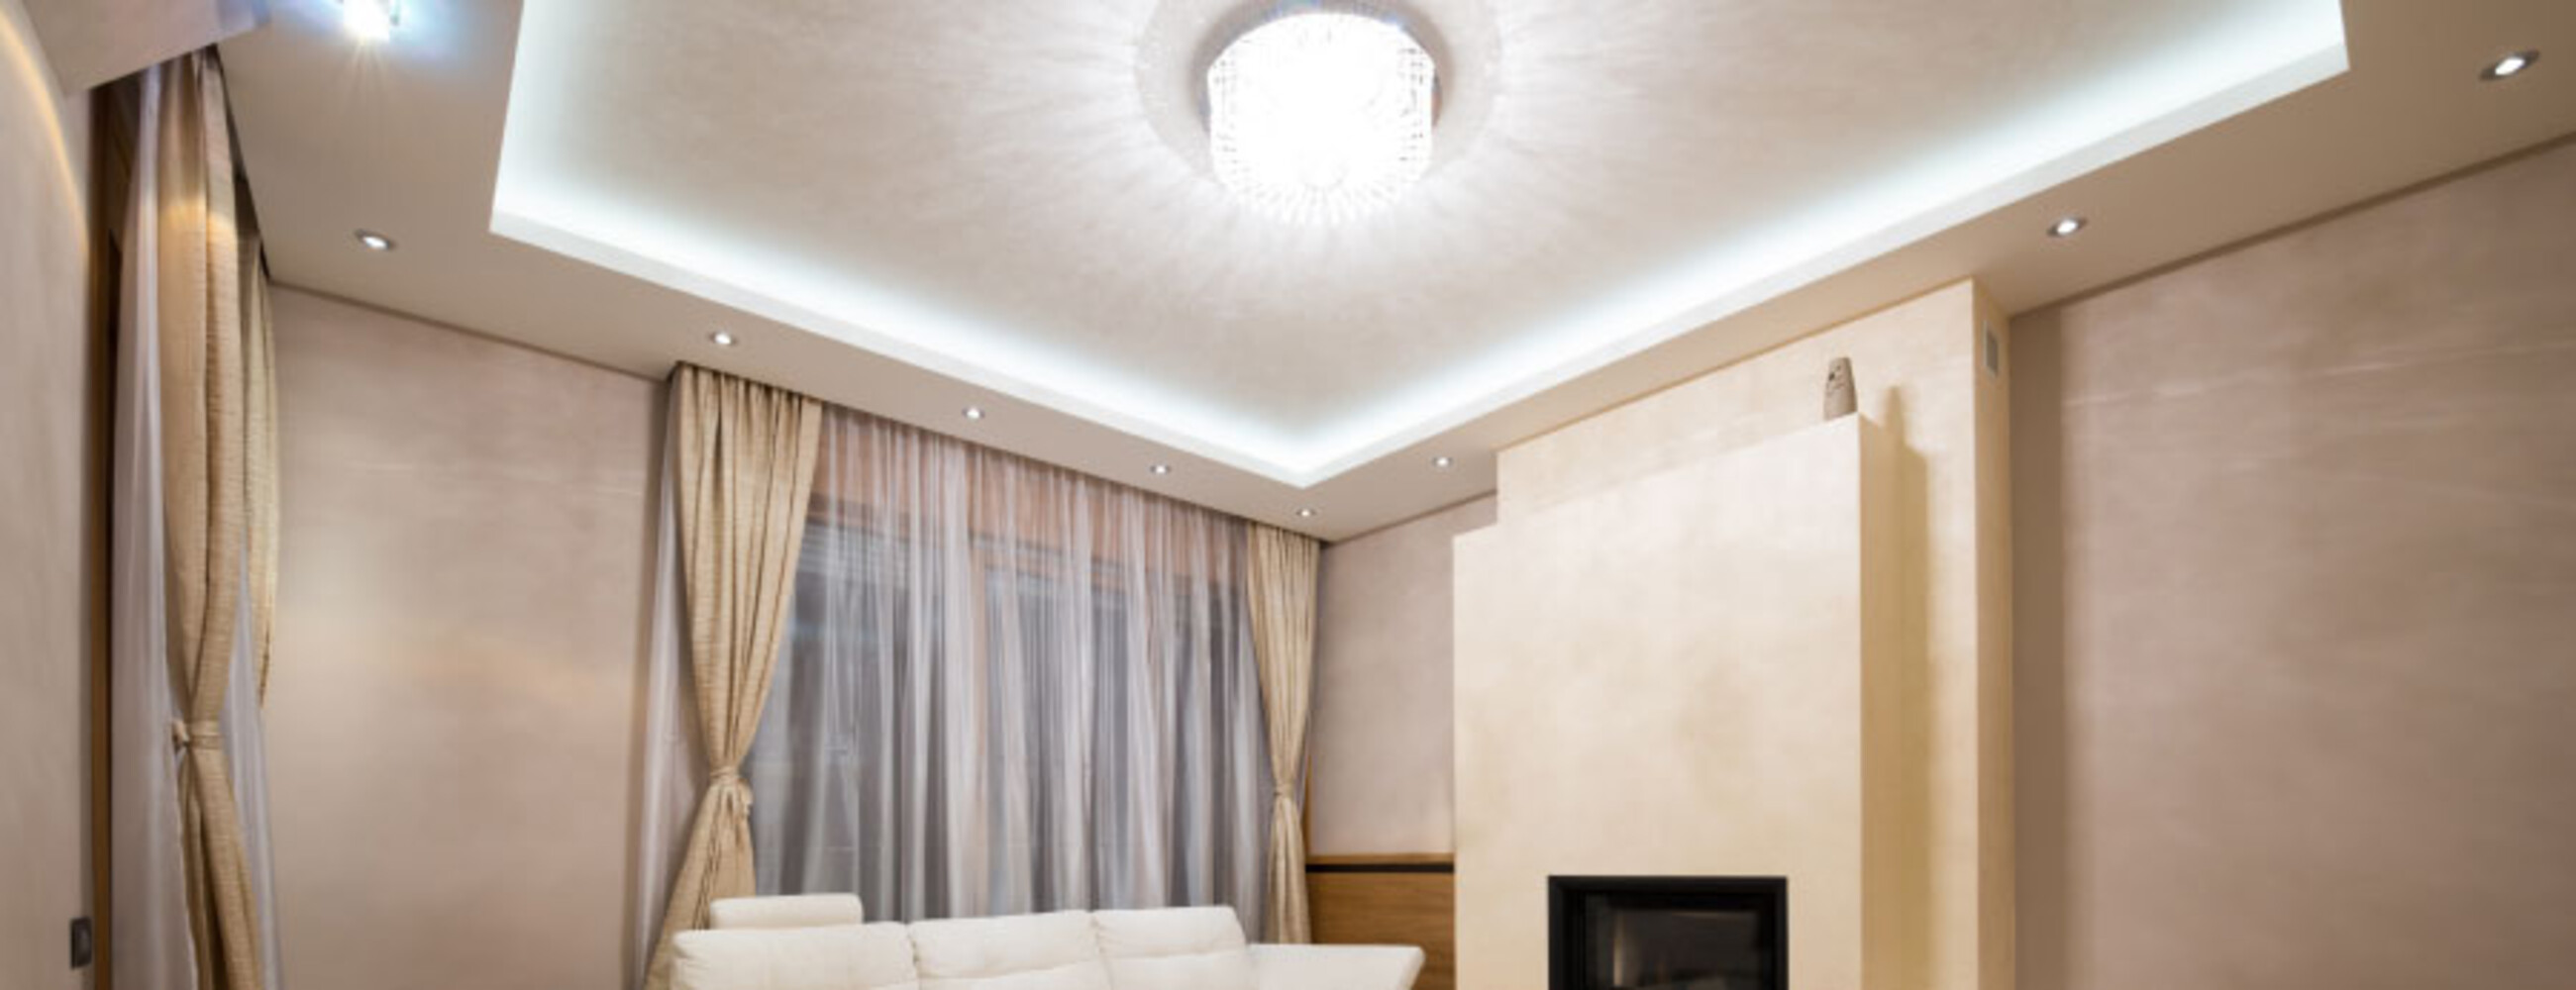 Hochwertiger LED-Streifen von LED Universum zur smarten Beleuchtung im Haus